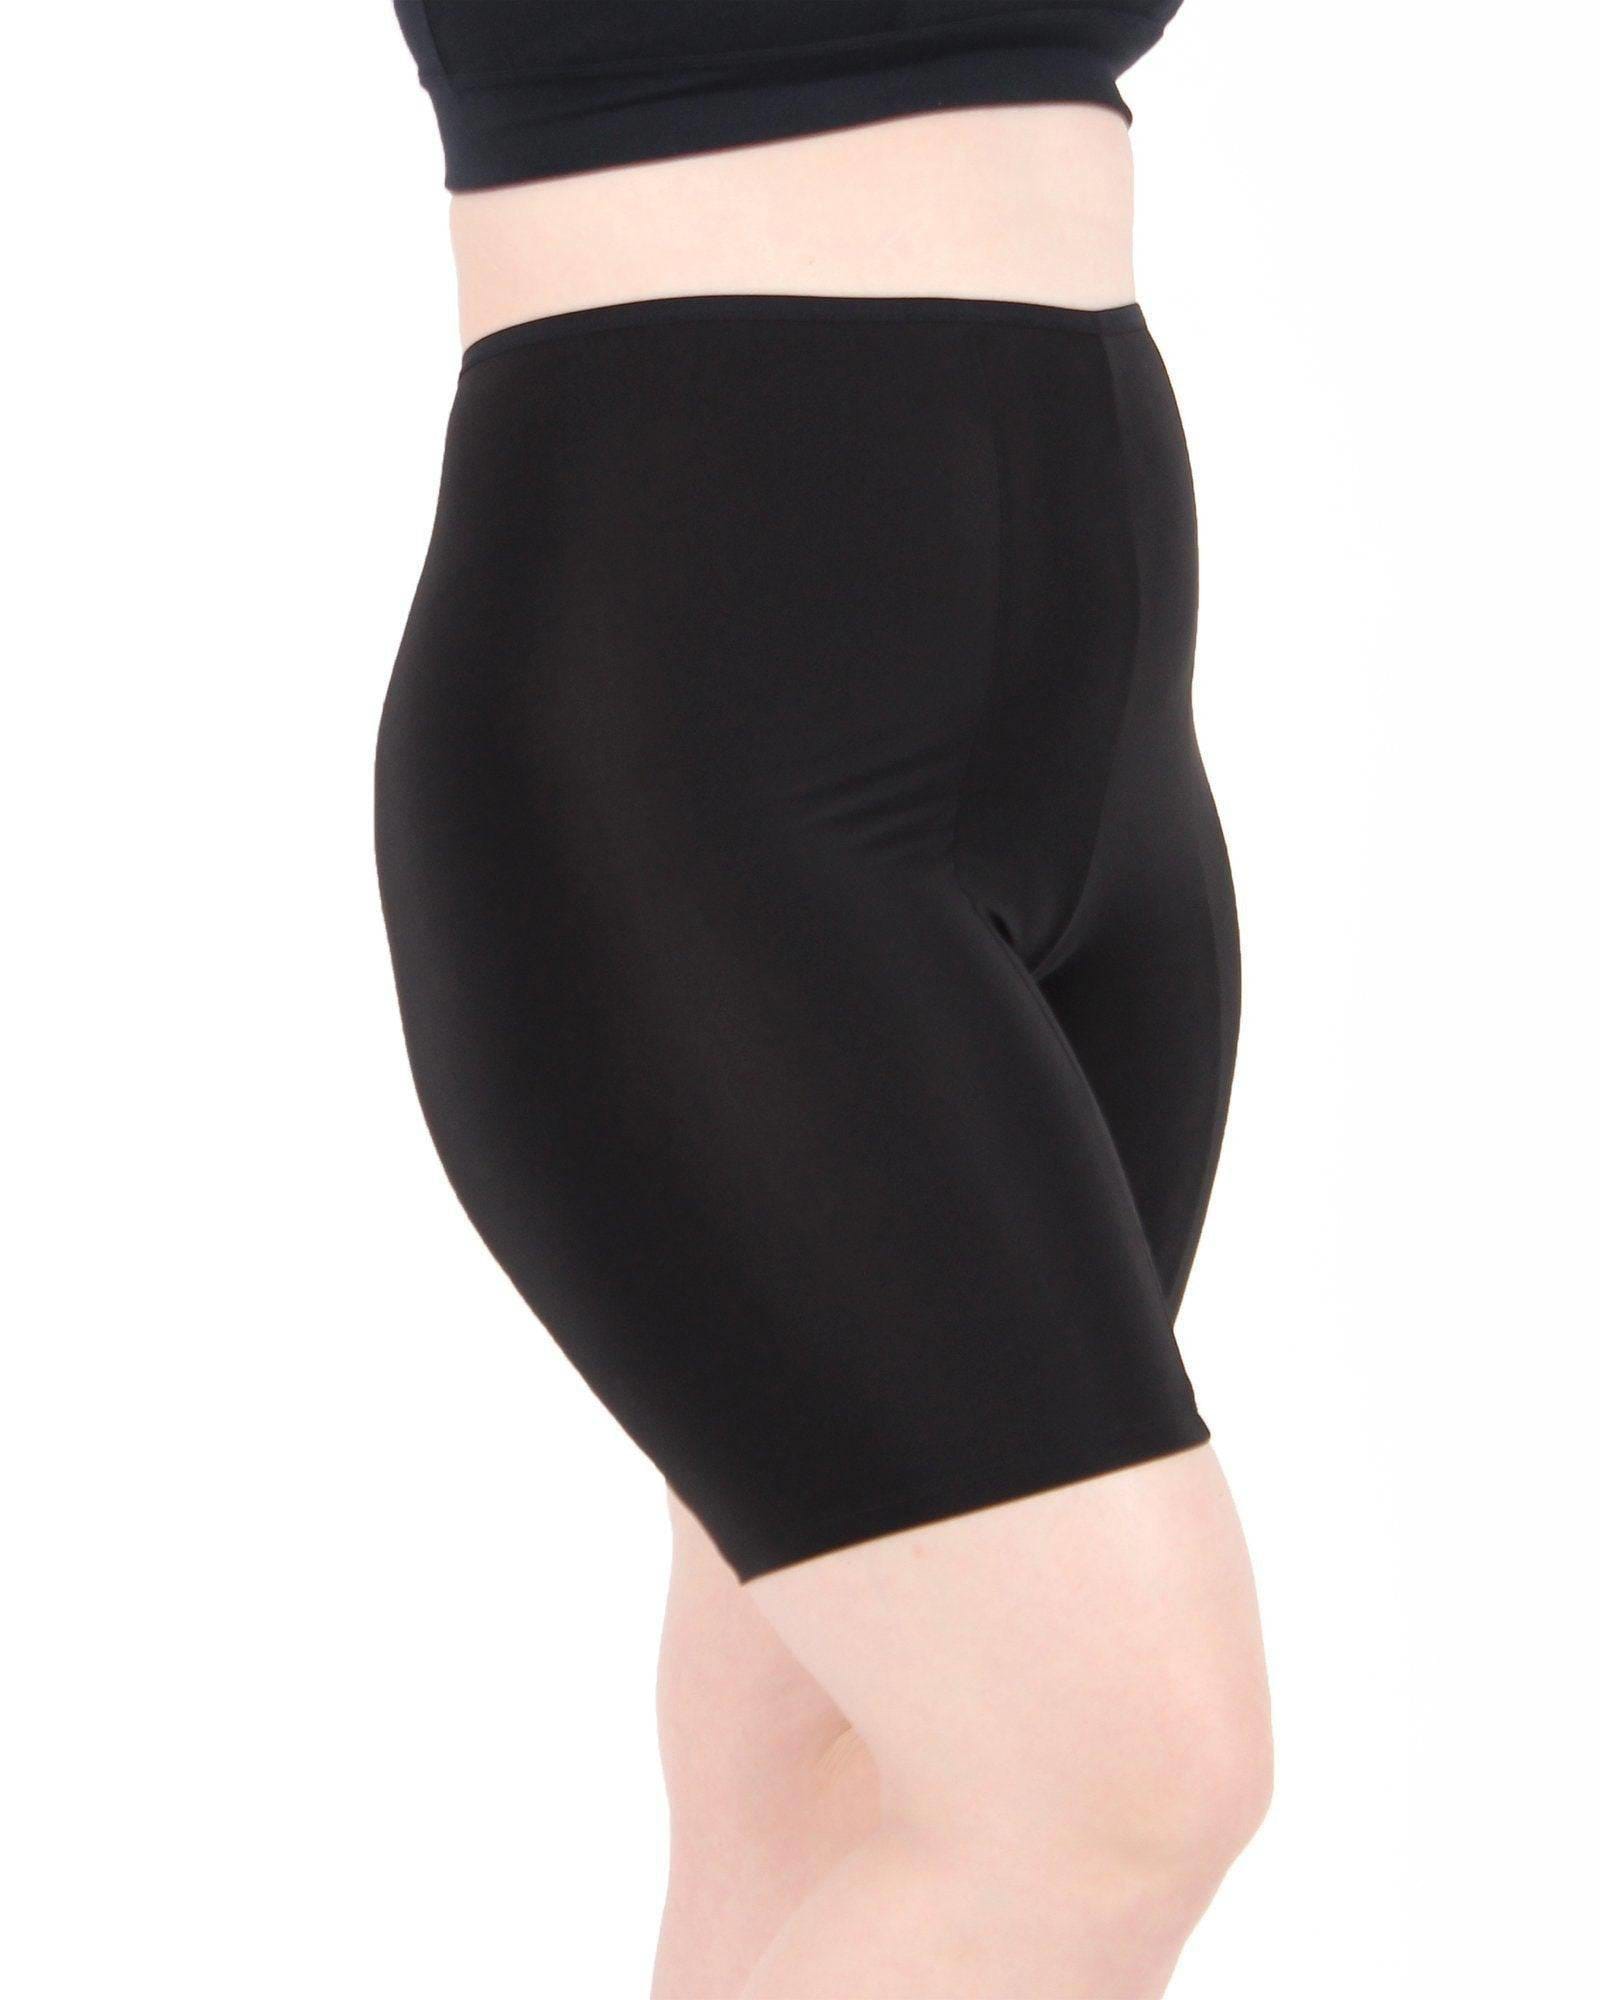 Plus Size Hip Balancing Chafe Free Shorts, AU 22-26